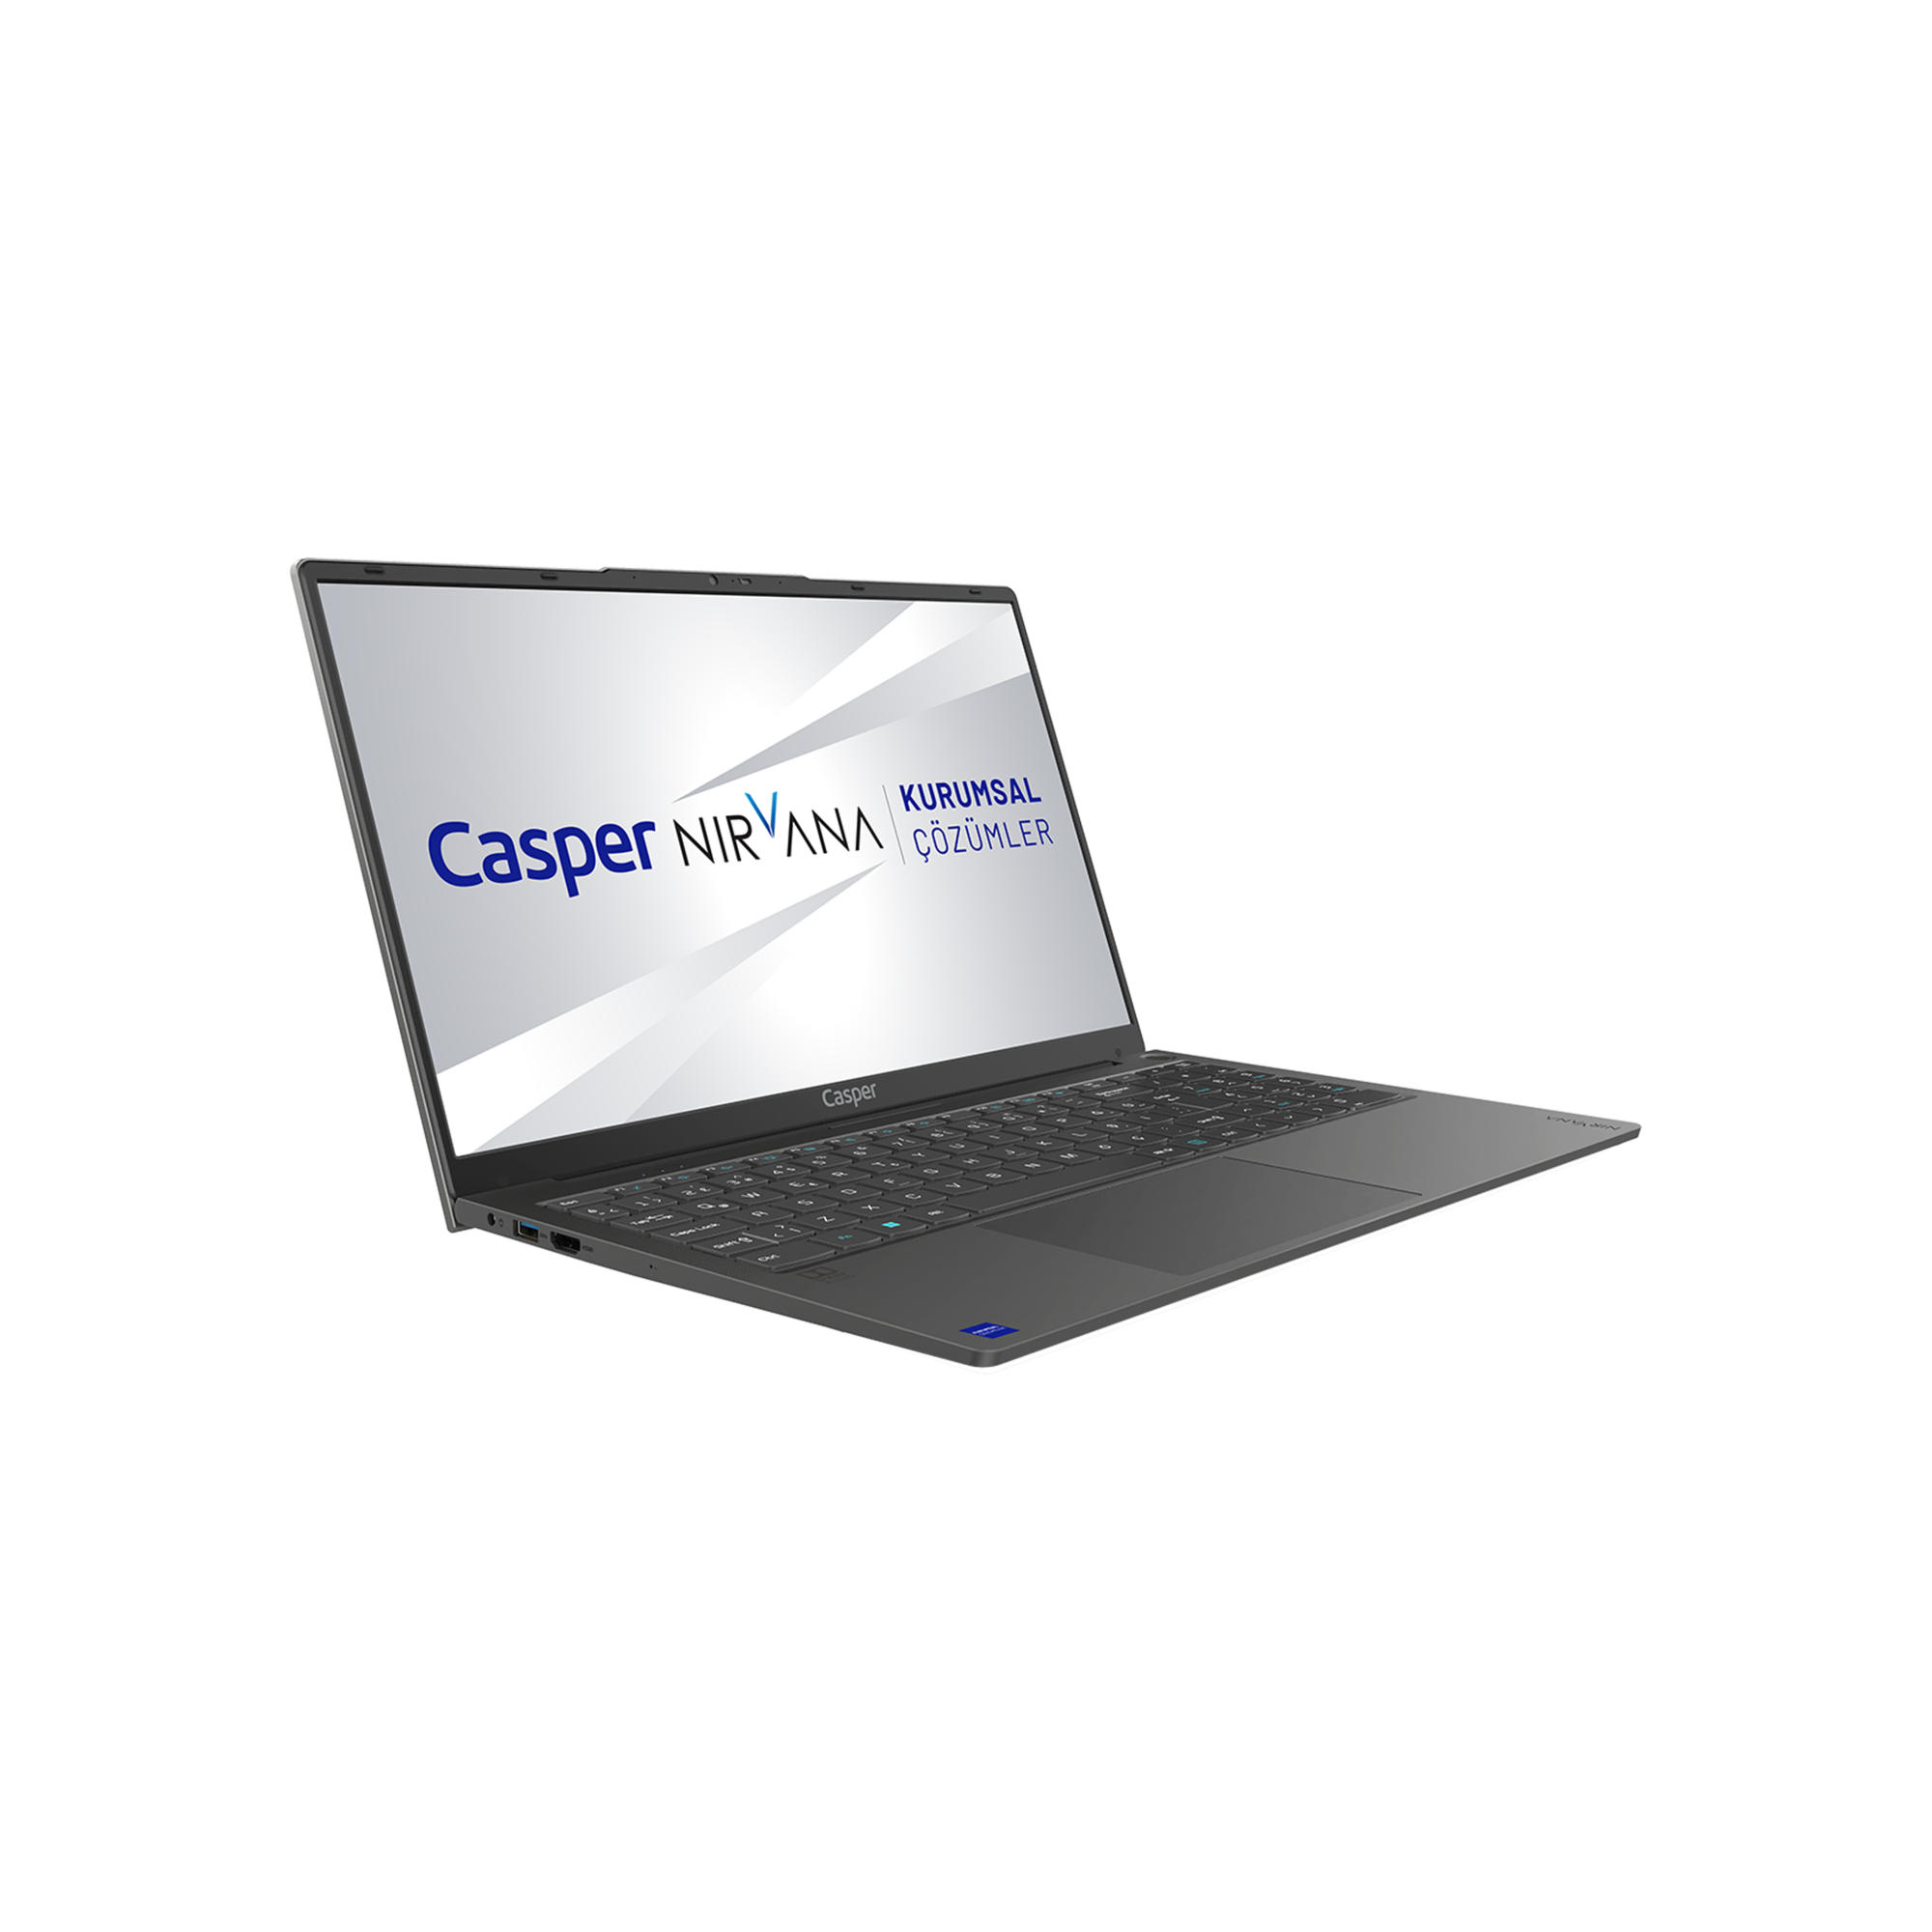 Casper Nirvana i5 8 500 x700 1235 8E00T Laptop